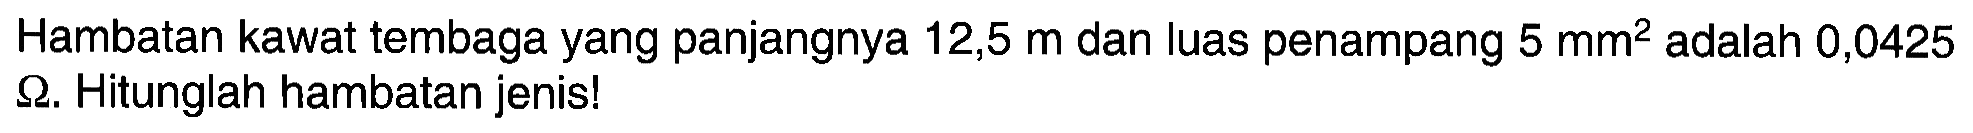 Hambatan kawat tembaga yang panjangnya 12,5 m dan luas penampang 5 mm^2 adalah 0,0425 ohm. Hitunglah hambatan jenis!